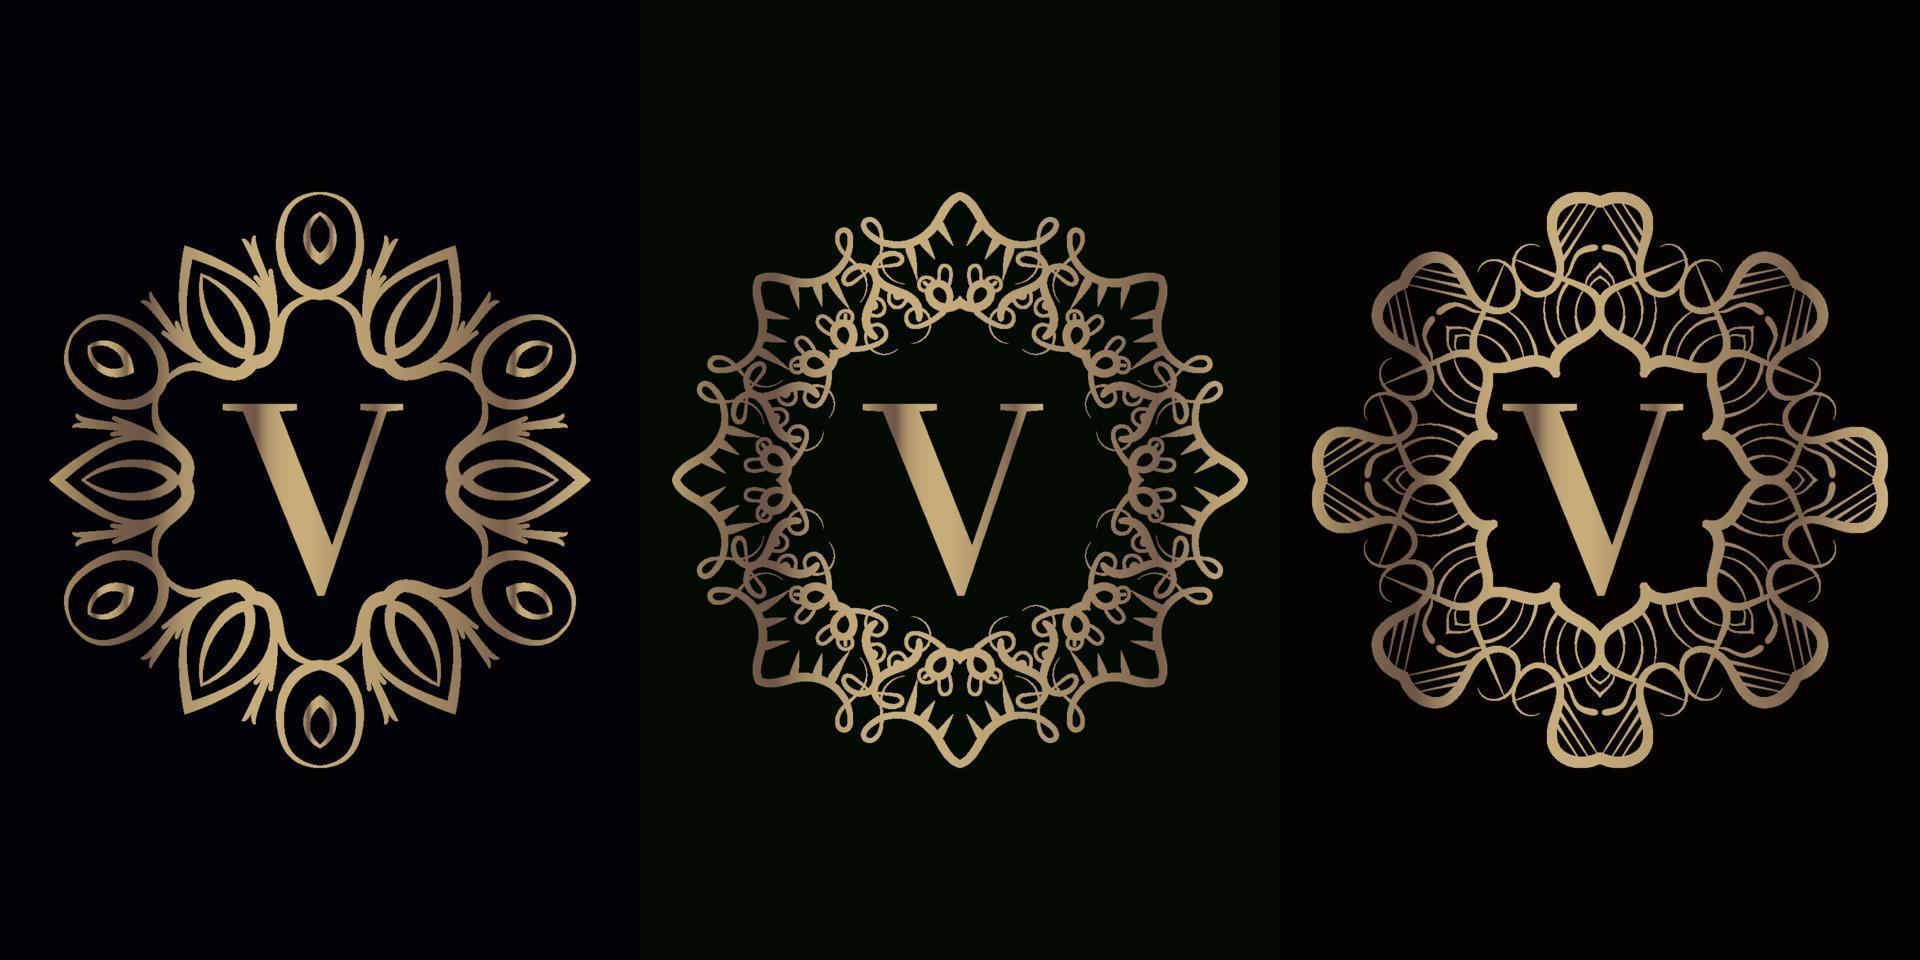 collection de logo initial v avec cadre d'ornement de mandala de luxe vecteur